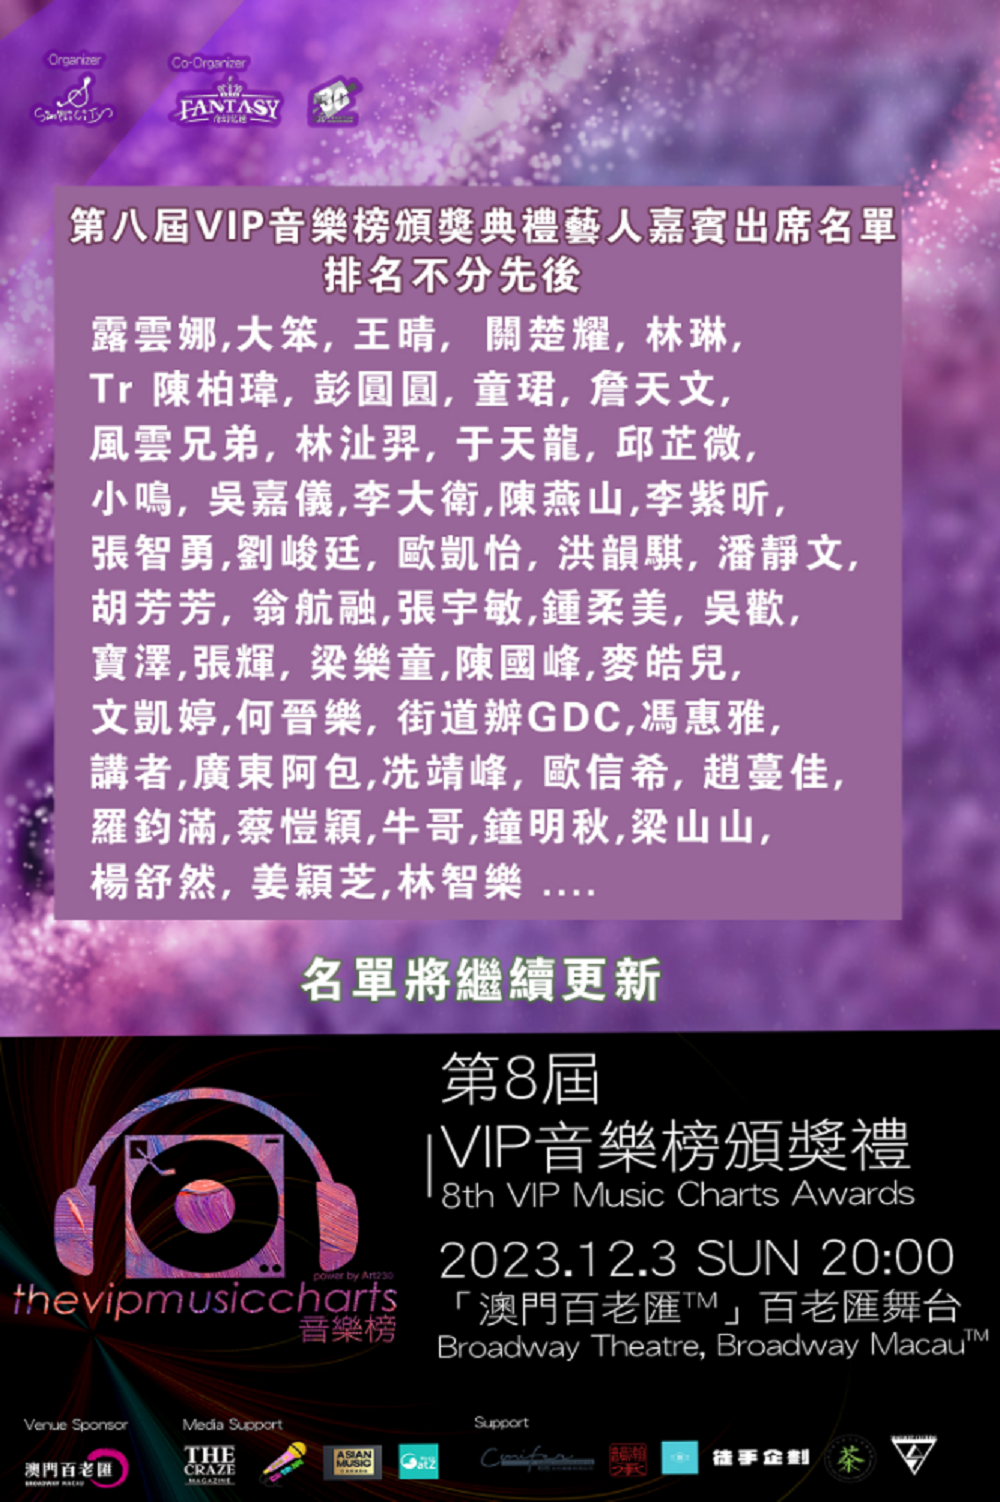 亚洲乐坛盛典: 第八届VIP音乐榜颁奖典礼优秀音乐人聚首一堂鼓励乐坛加许音乐人